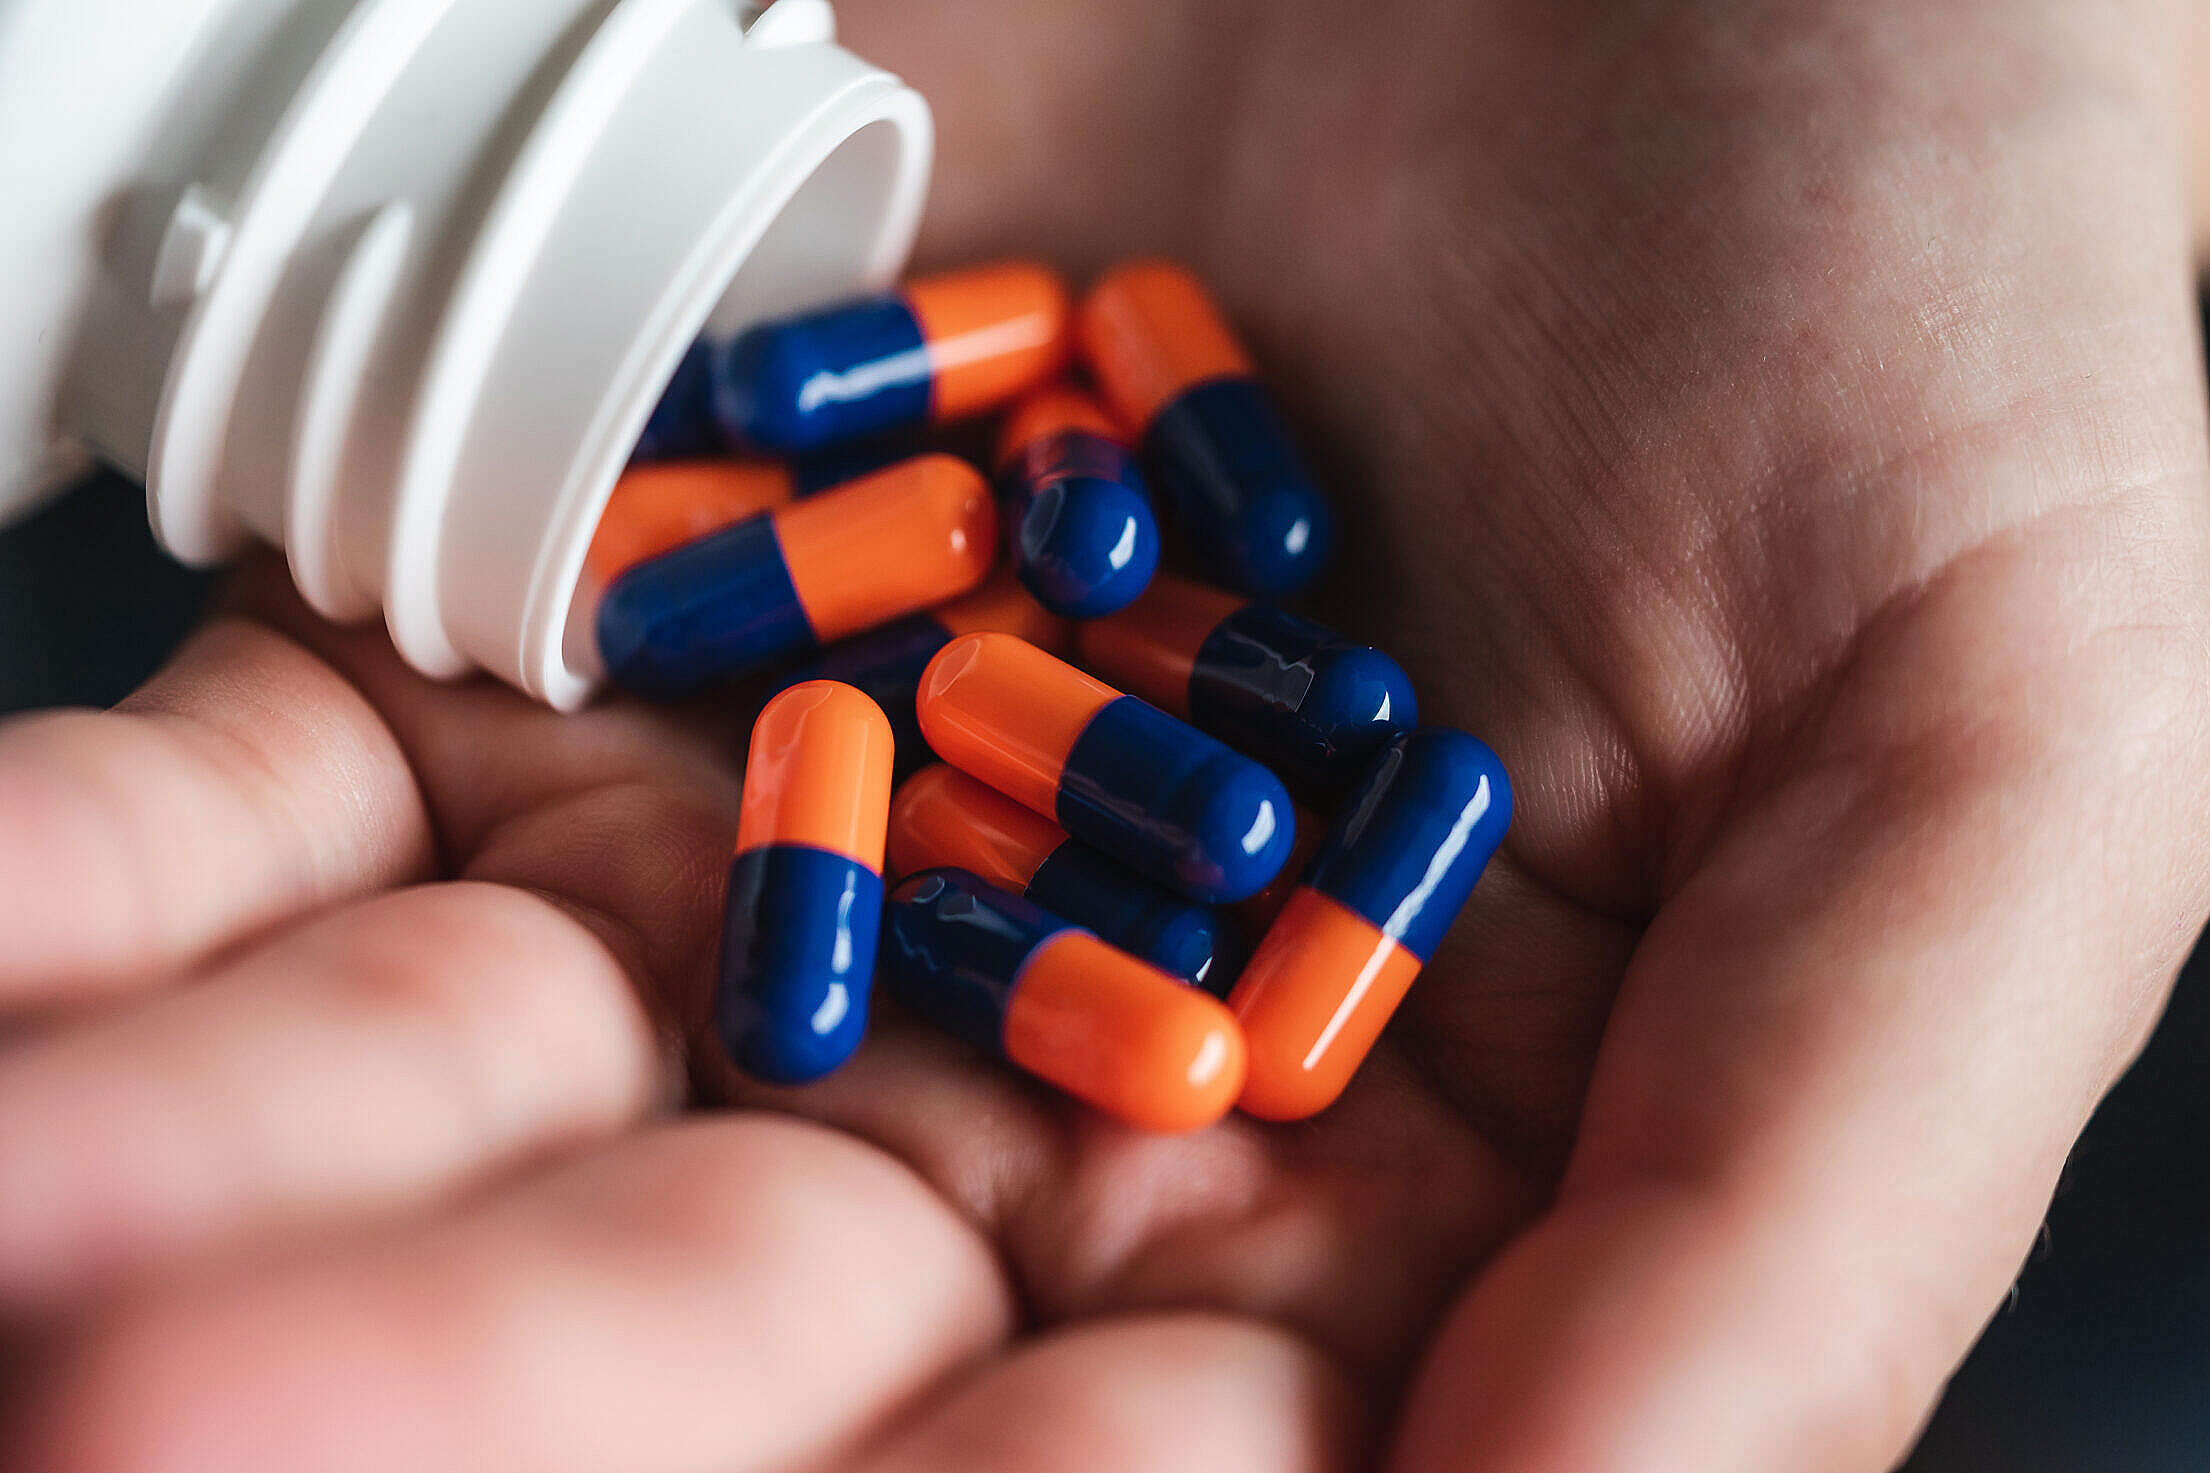 Handful of Smartdrugs Pills Free Stock Photo